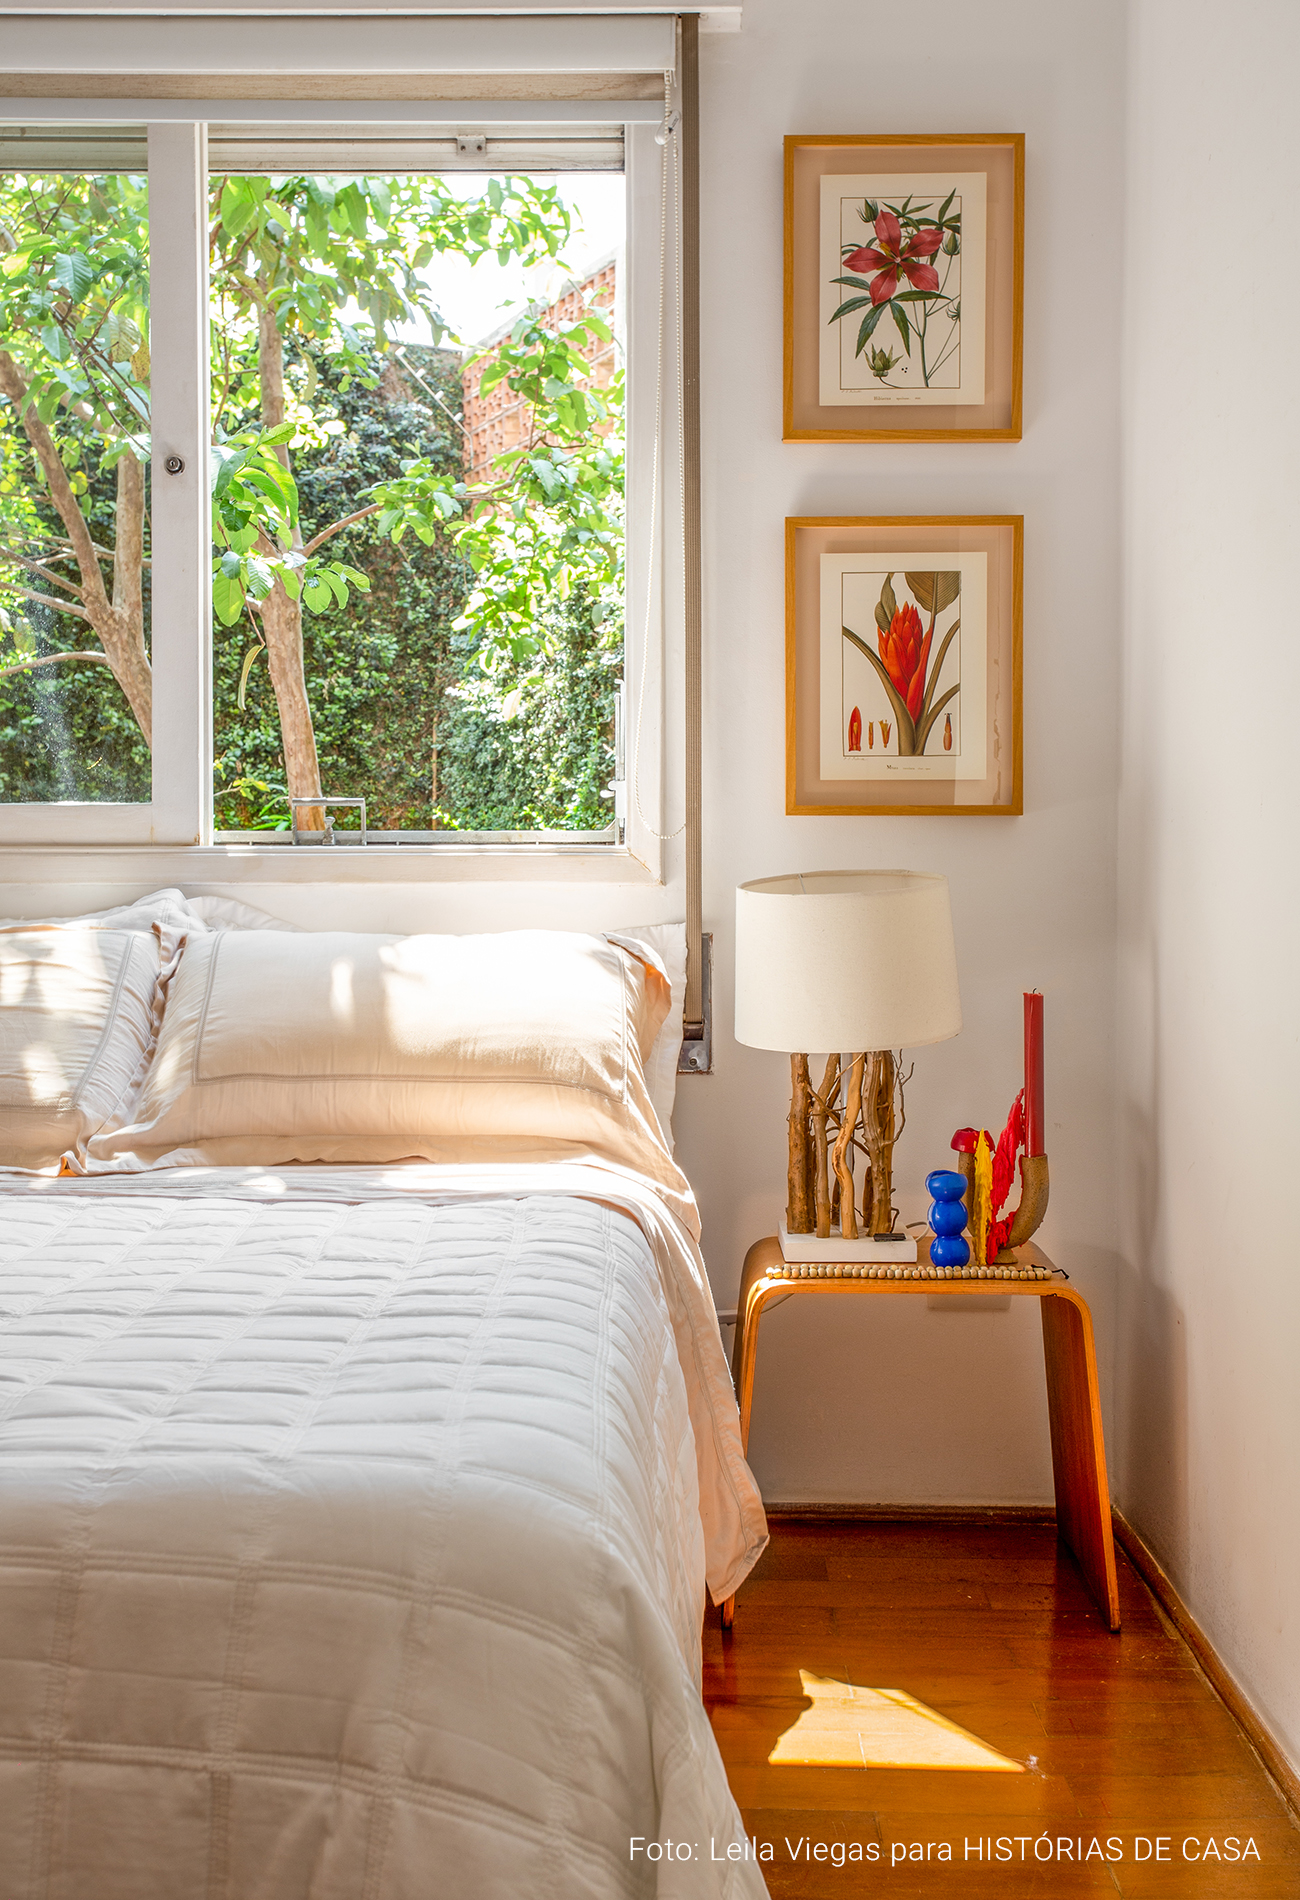 Apartamento acolhedor com plantas, cores neutras e claraboia